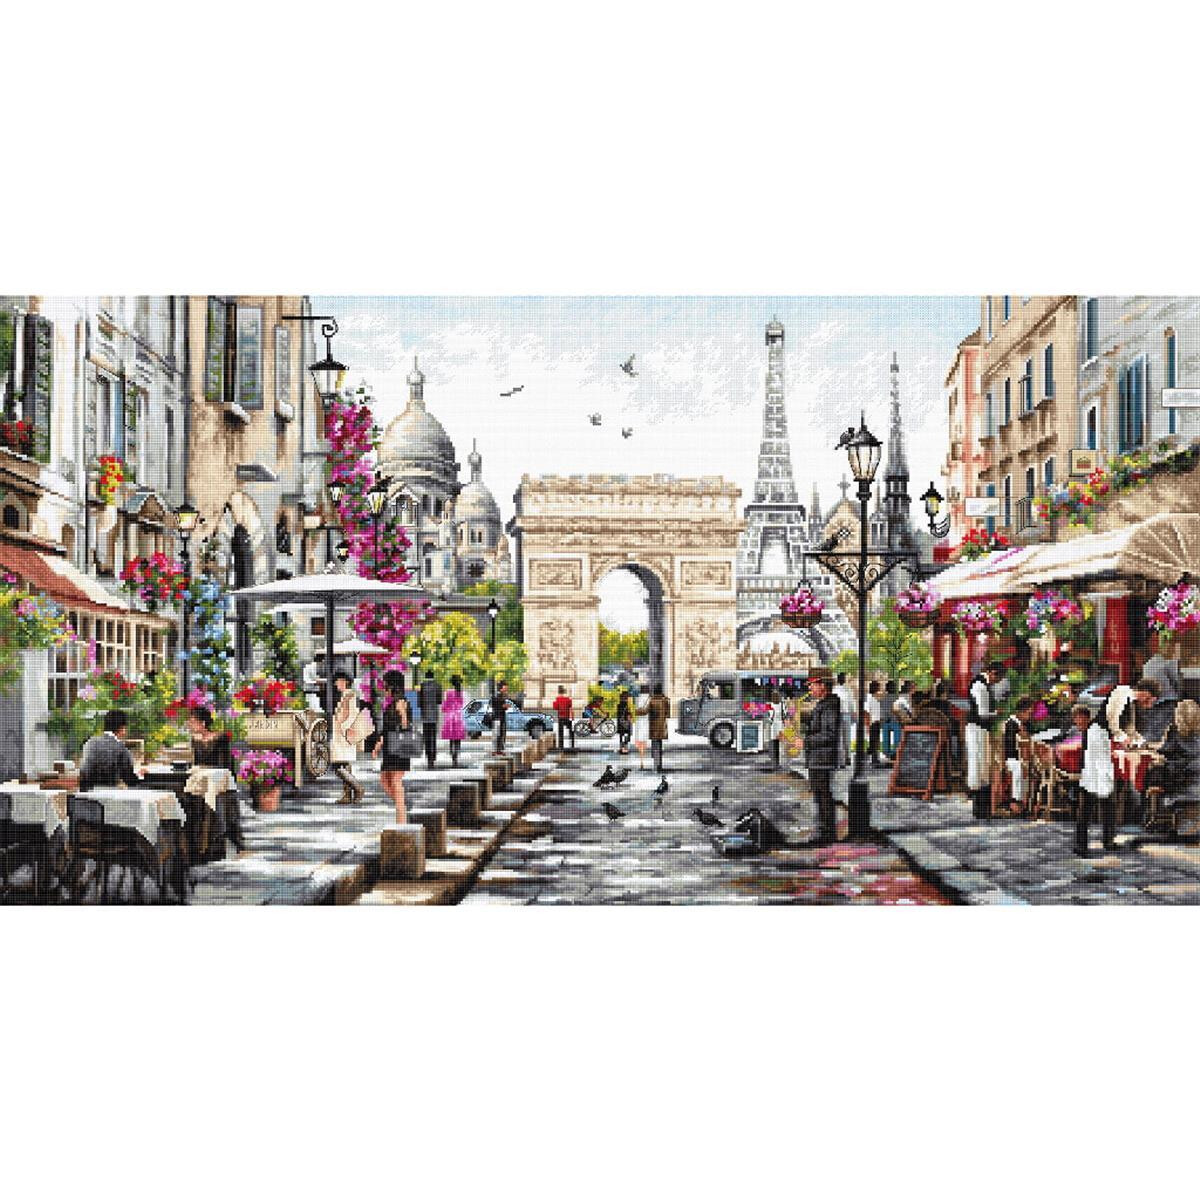 Une scène de rue parisienne animée avec...